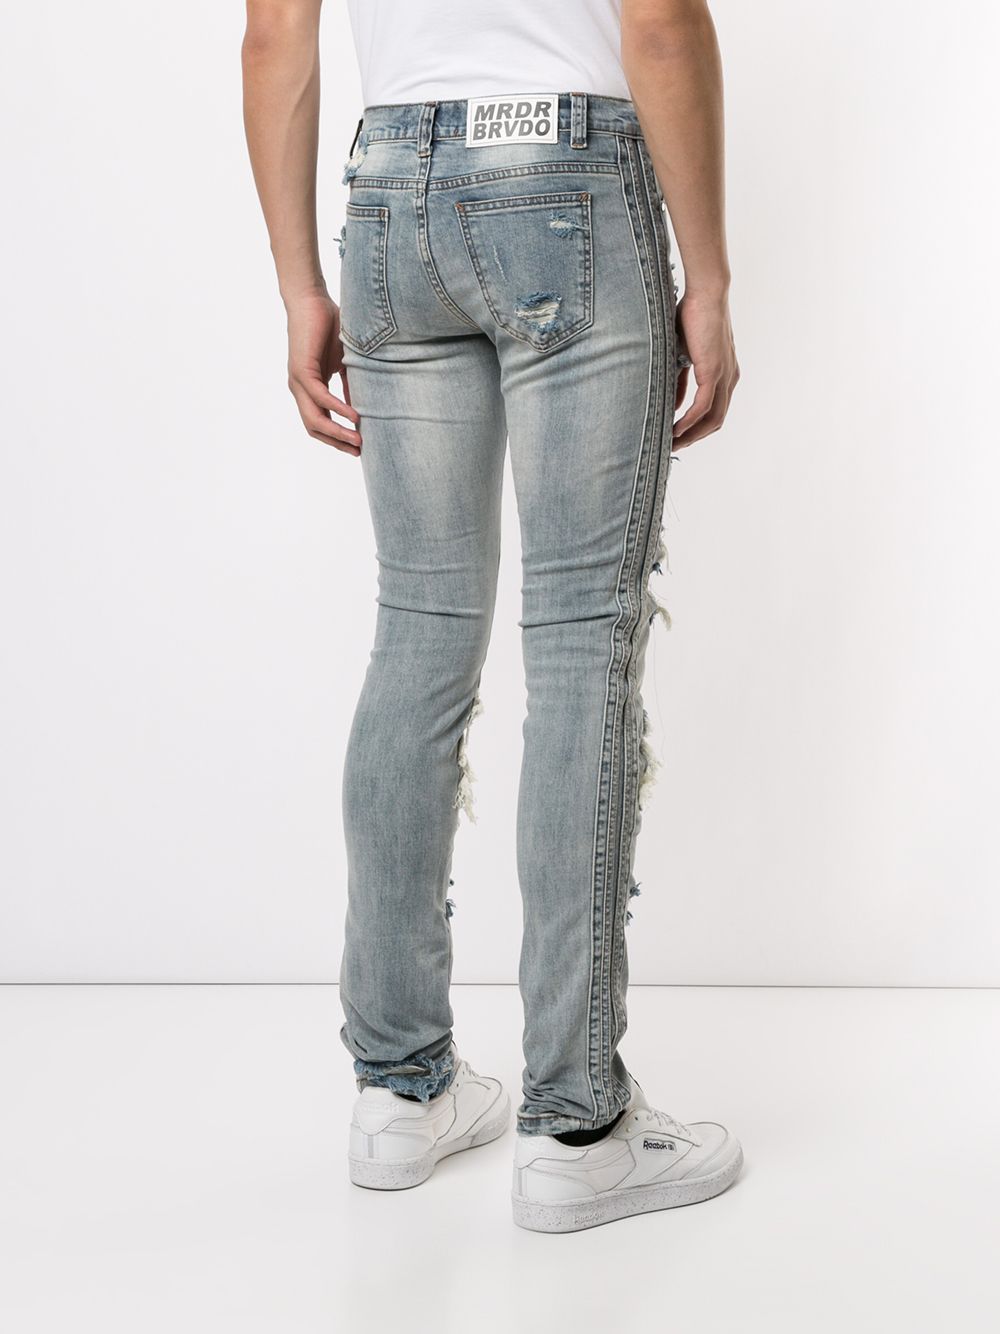 фото Ev Brovado джинсы скинни с прорезями и принтом